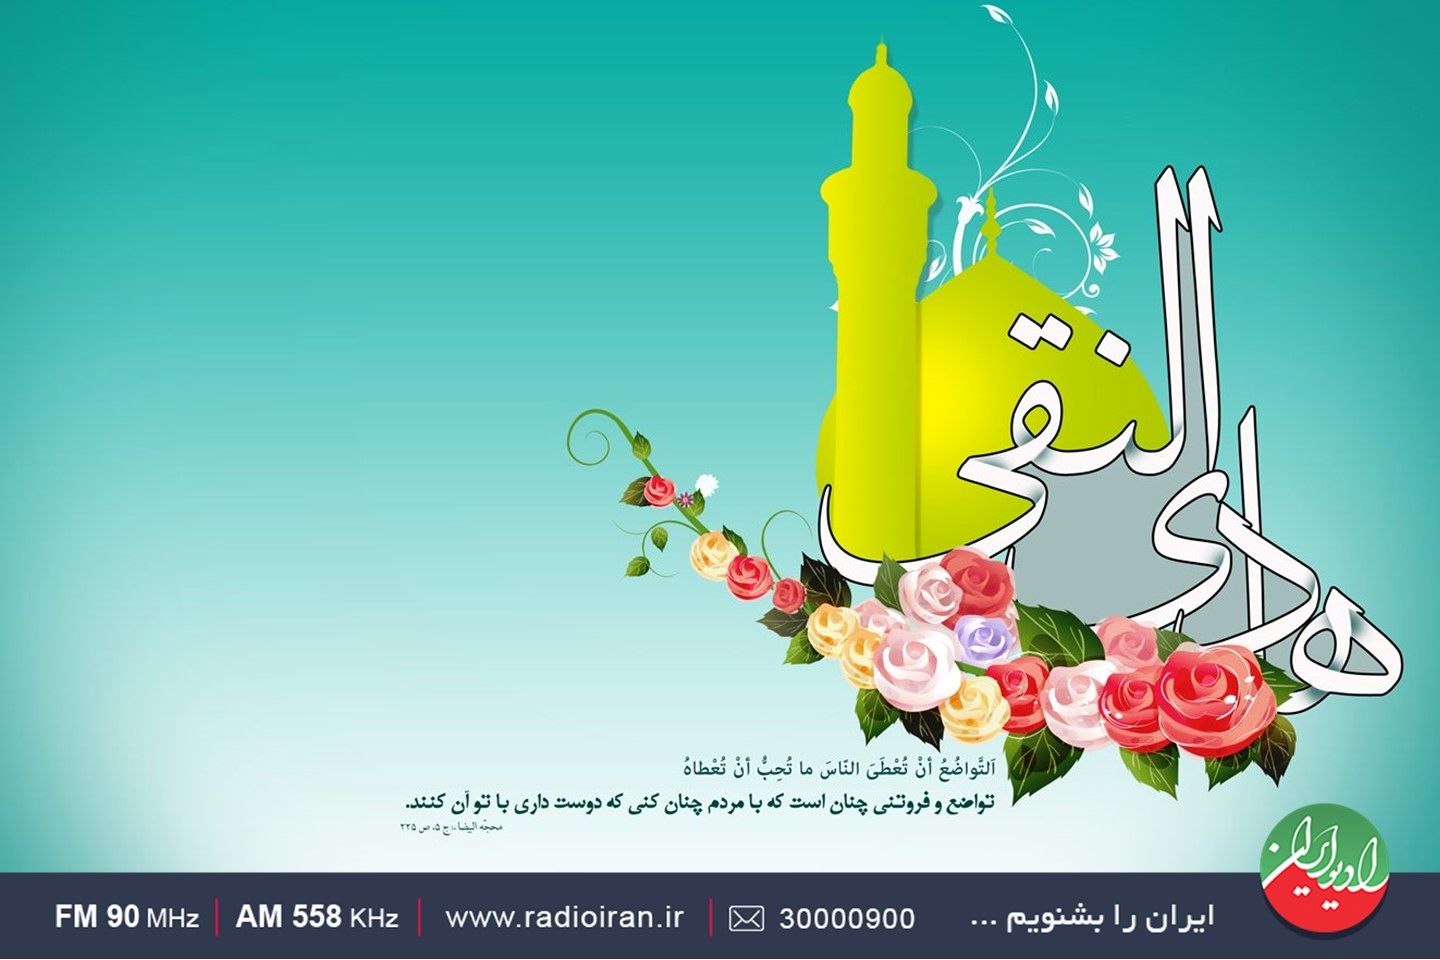 ویژه برنامه های رادیو ایران در میلاد حضرت علی النقی، امام هادی(ع)